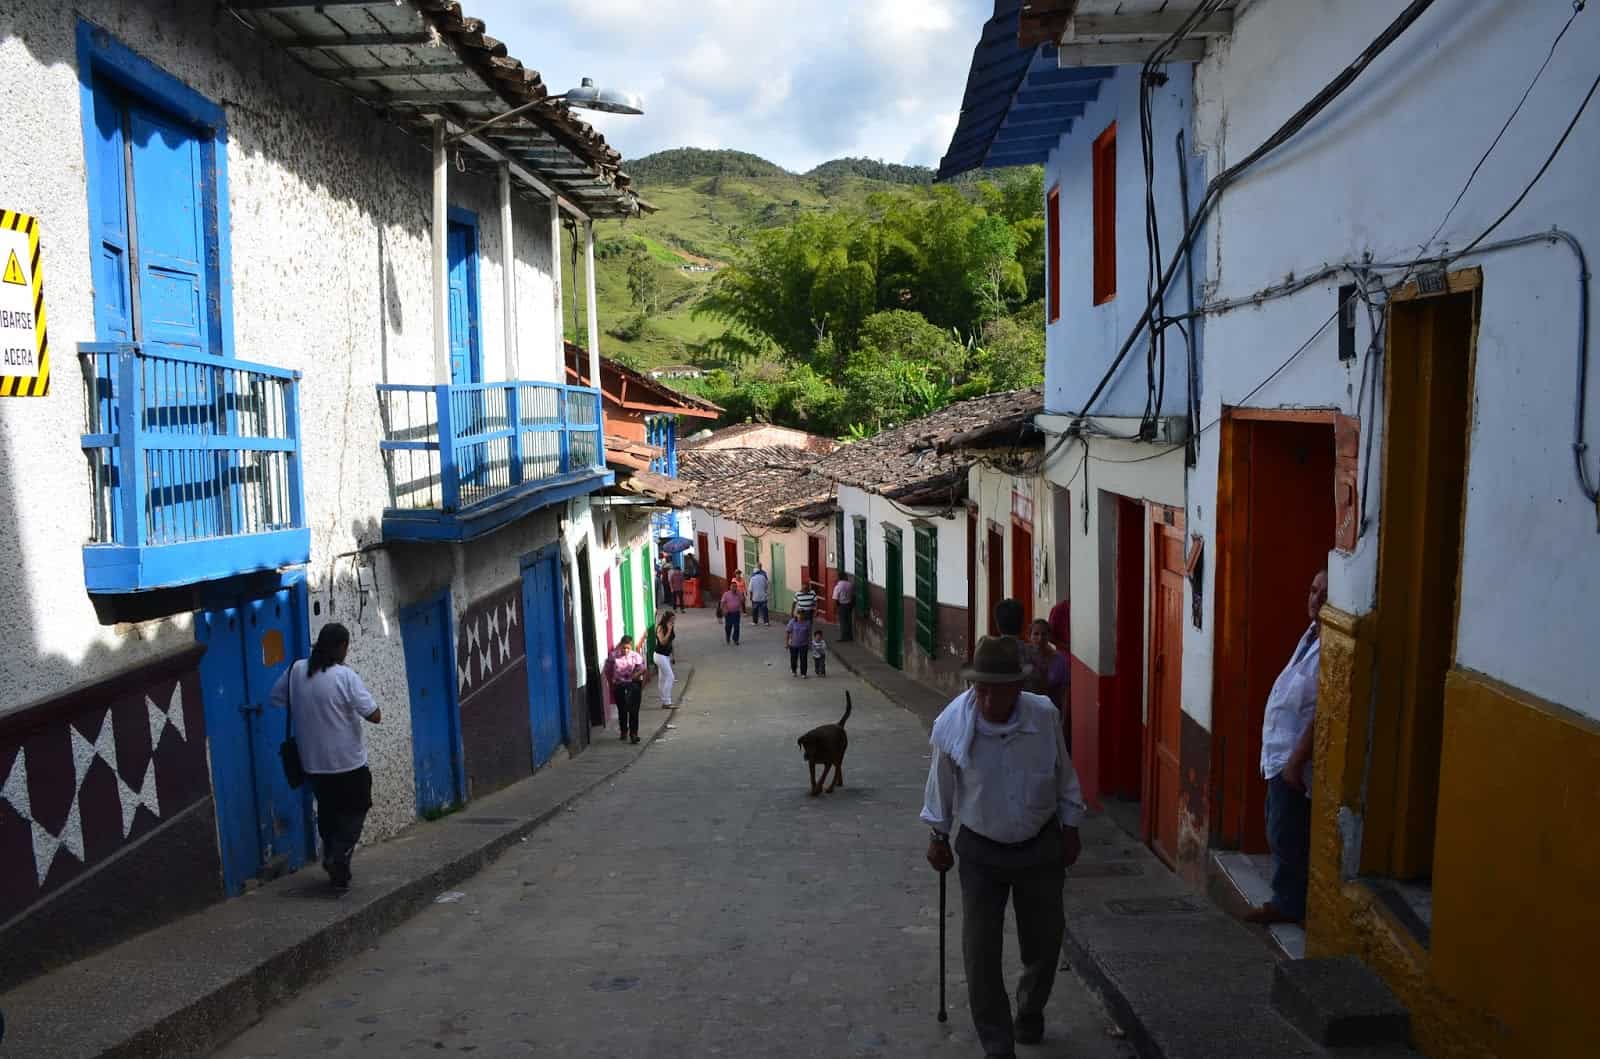 A street in Concepción, Antioquia, Colombia